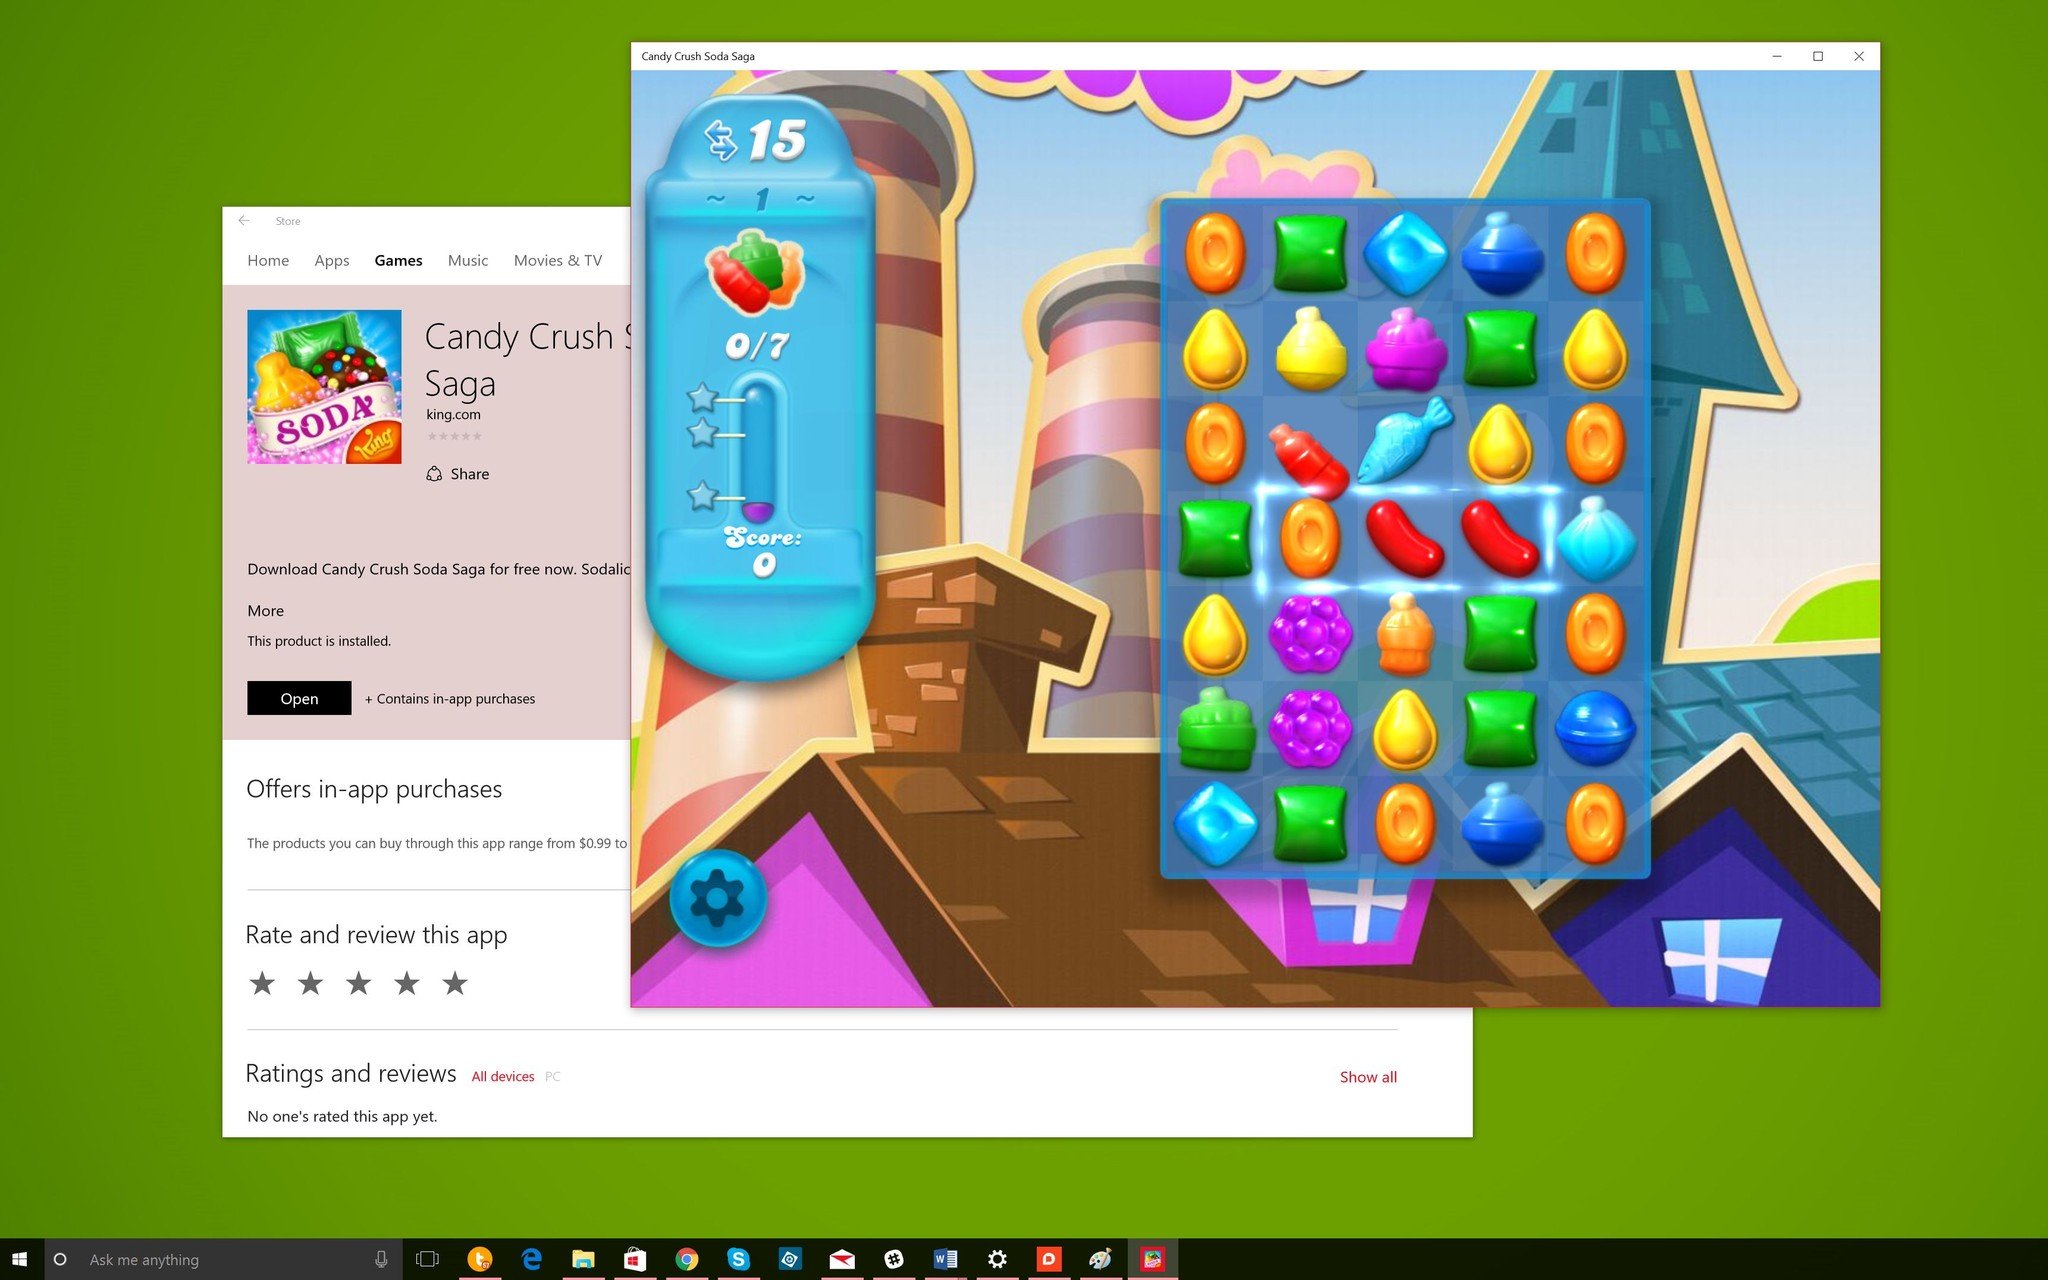 king - Candy Crush Soda Saga chính thức có mặt trên Windows 10 Candy-crush-soda-saga